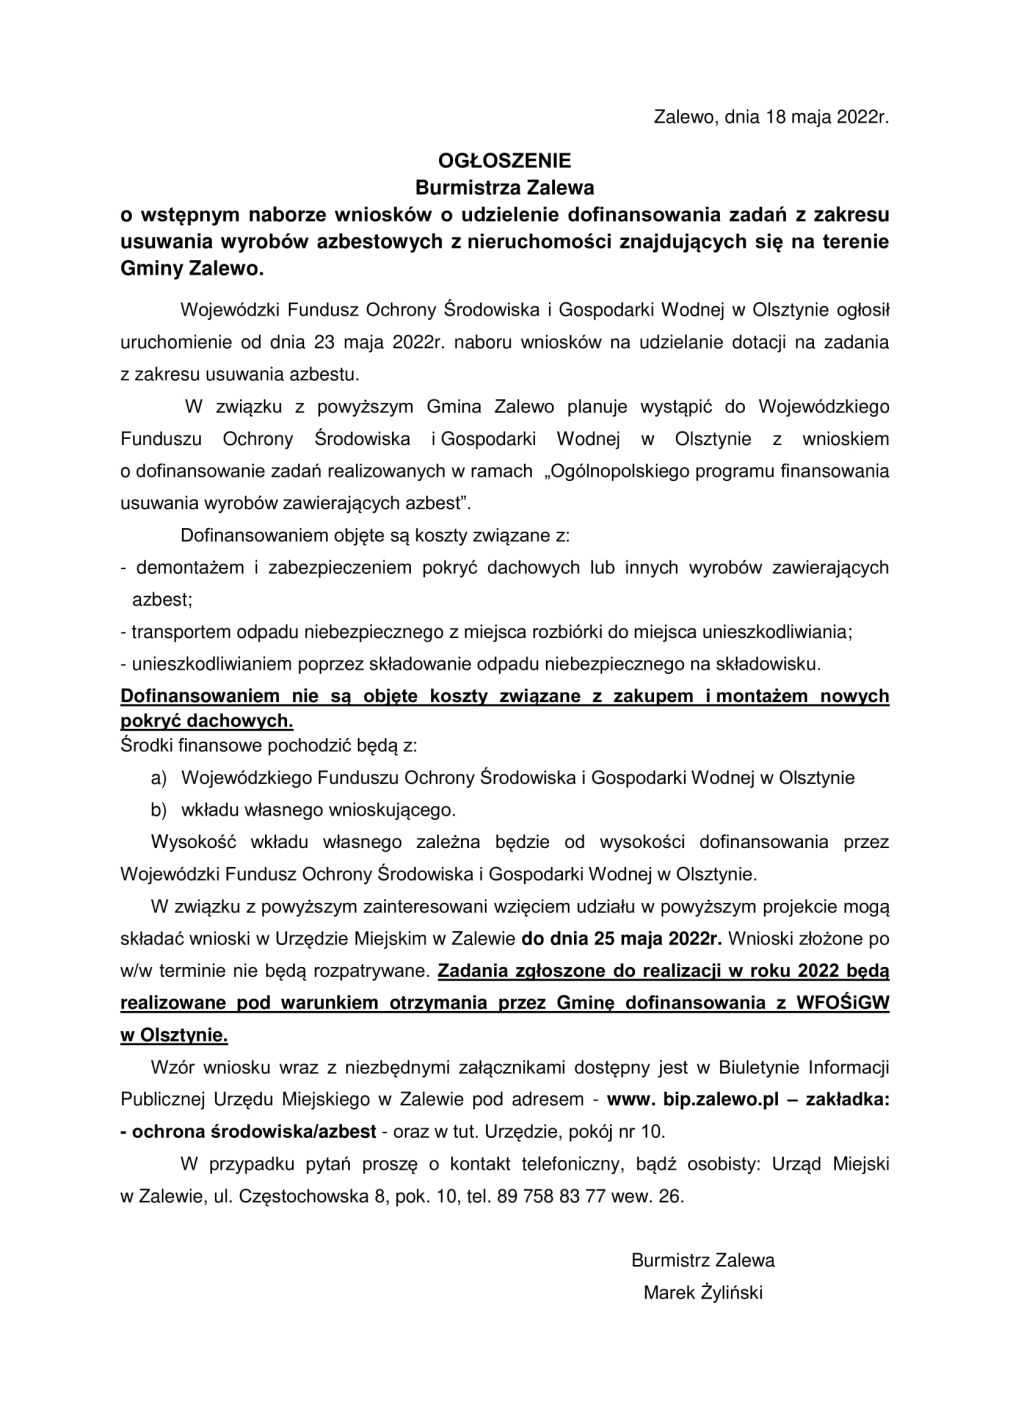 Ogłoszenie o wstępnym naborze wniosków o udzielenie dofinansowania zadań z zakresu usuwania wyrobów azbestowych znajdujących się na terenie Gminy Zalewo